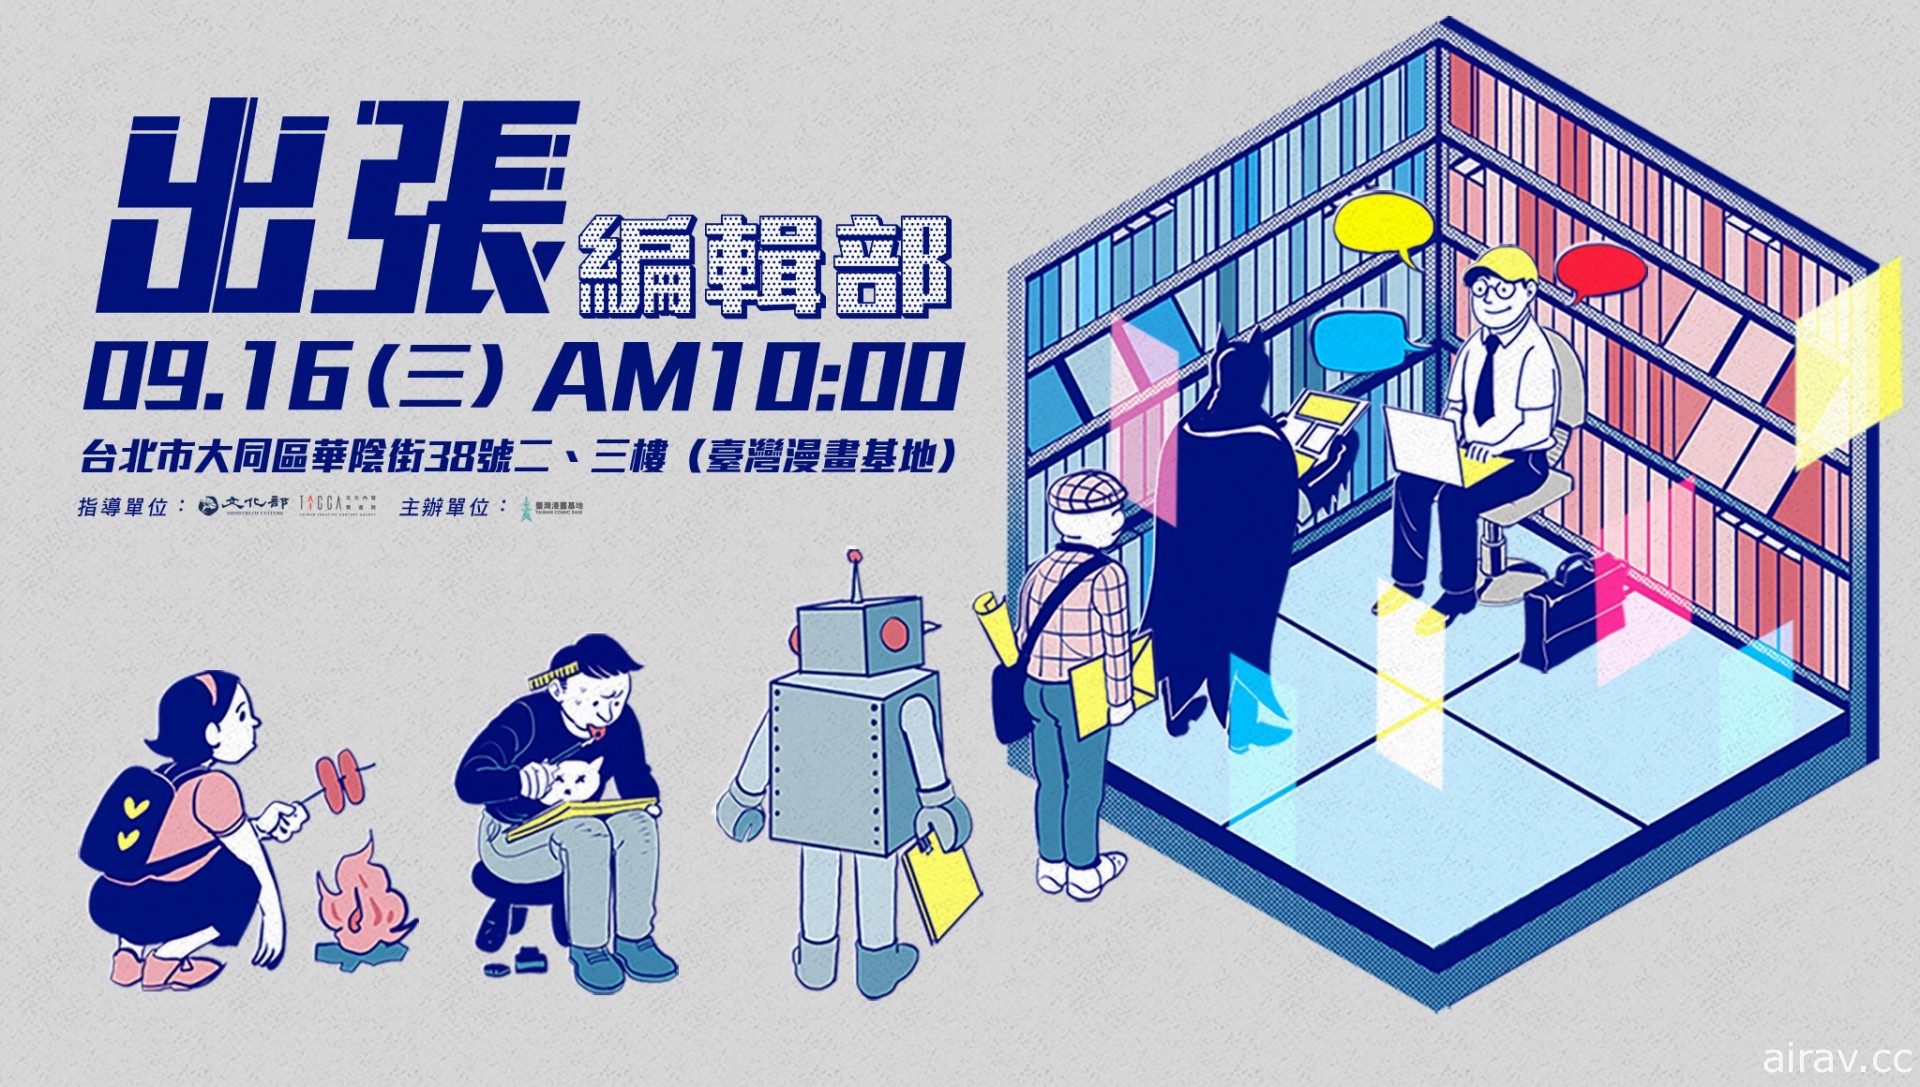 臺灣漫畫基地將於 9 月 16 日舉辦「出張編輯部」邀請專業編輯與創作者與會